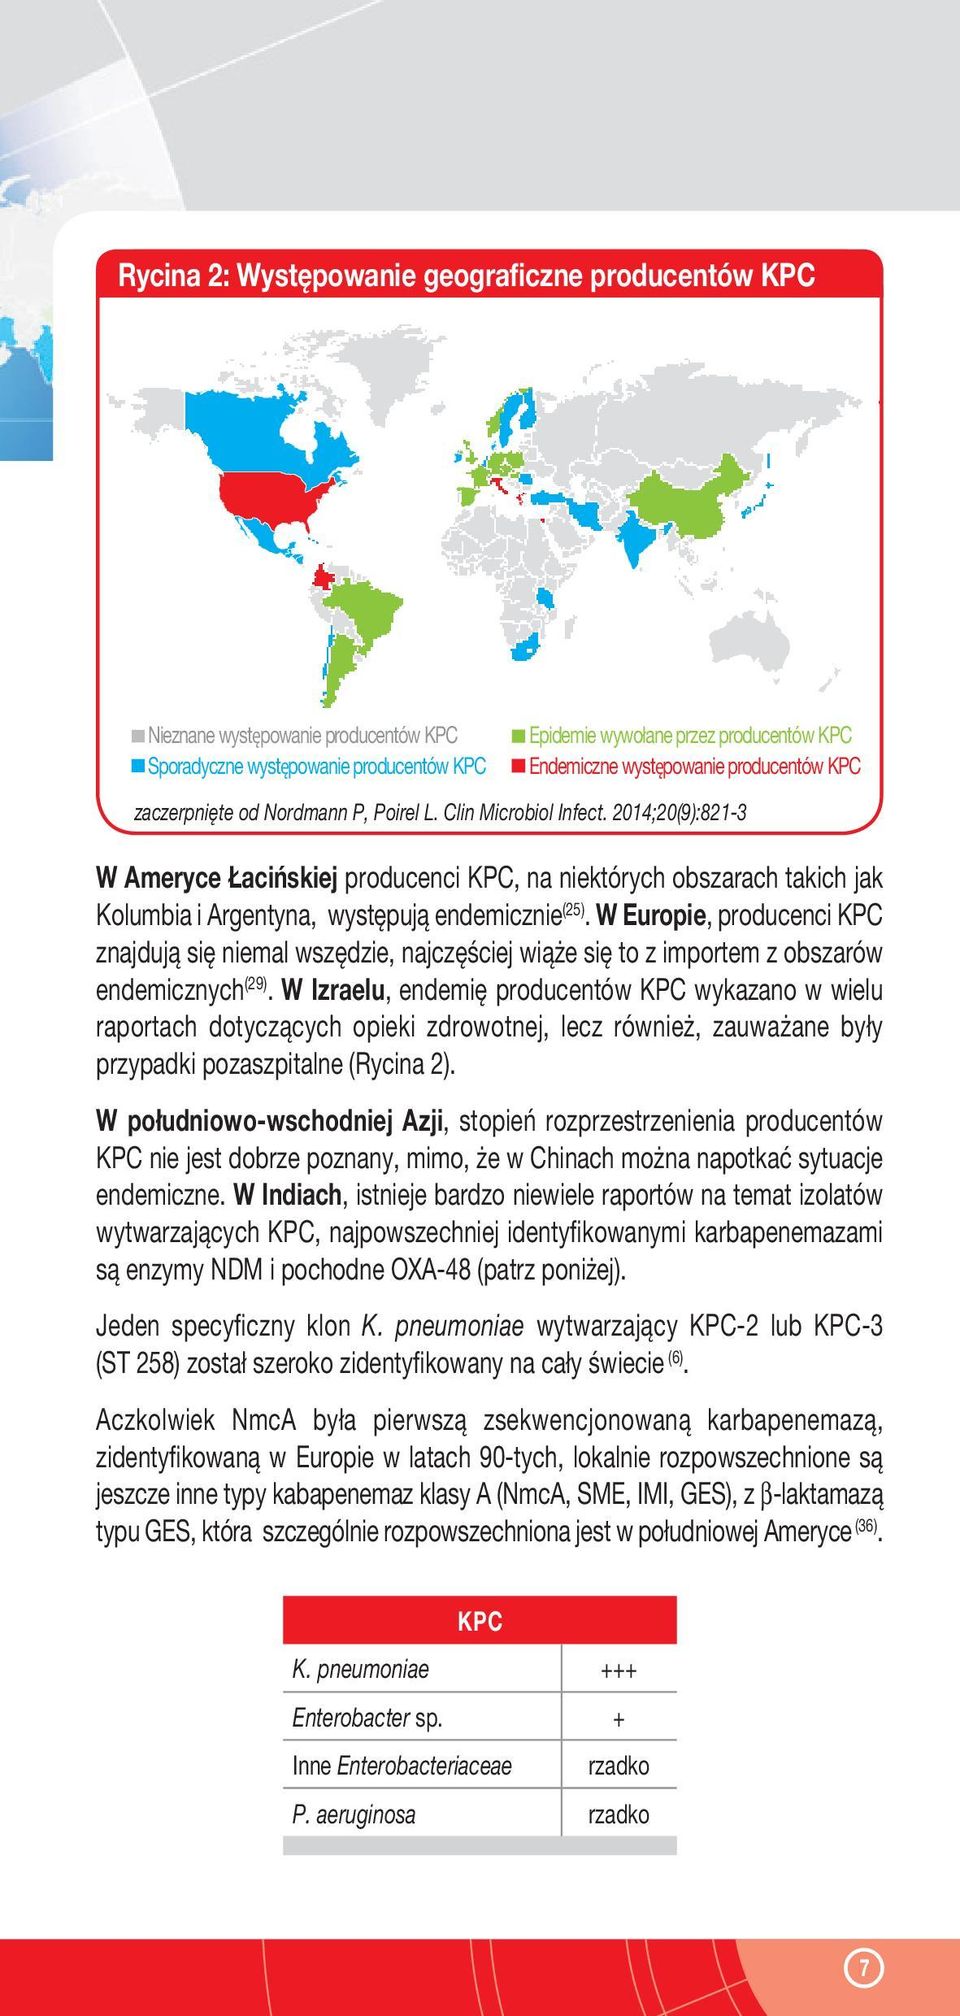 2014;20(9):821-3 W Ameryce Łacińskiej producenci KPC, na niektórych obszarach takich jak Kolumbia i Argentyna, występują endemicznie (25).